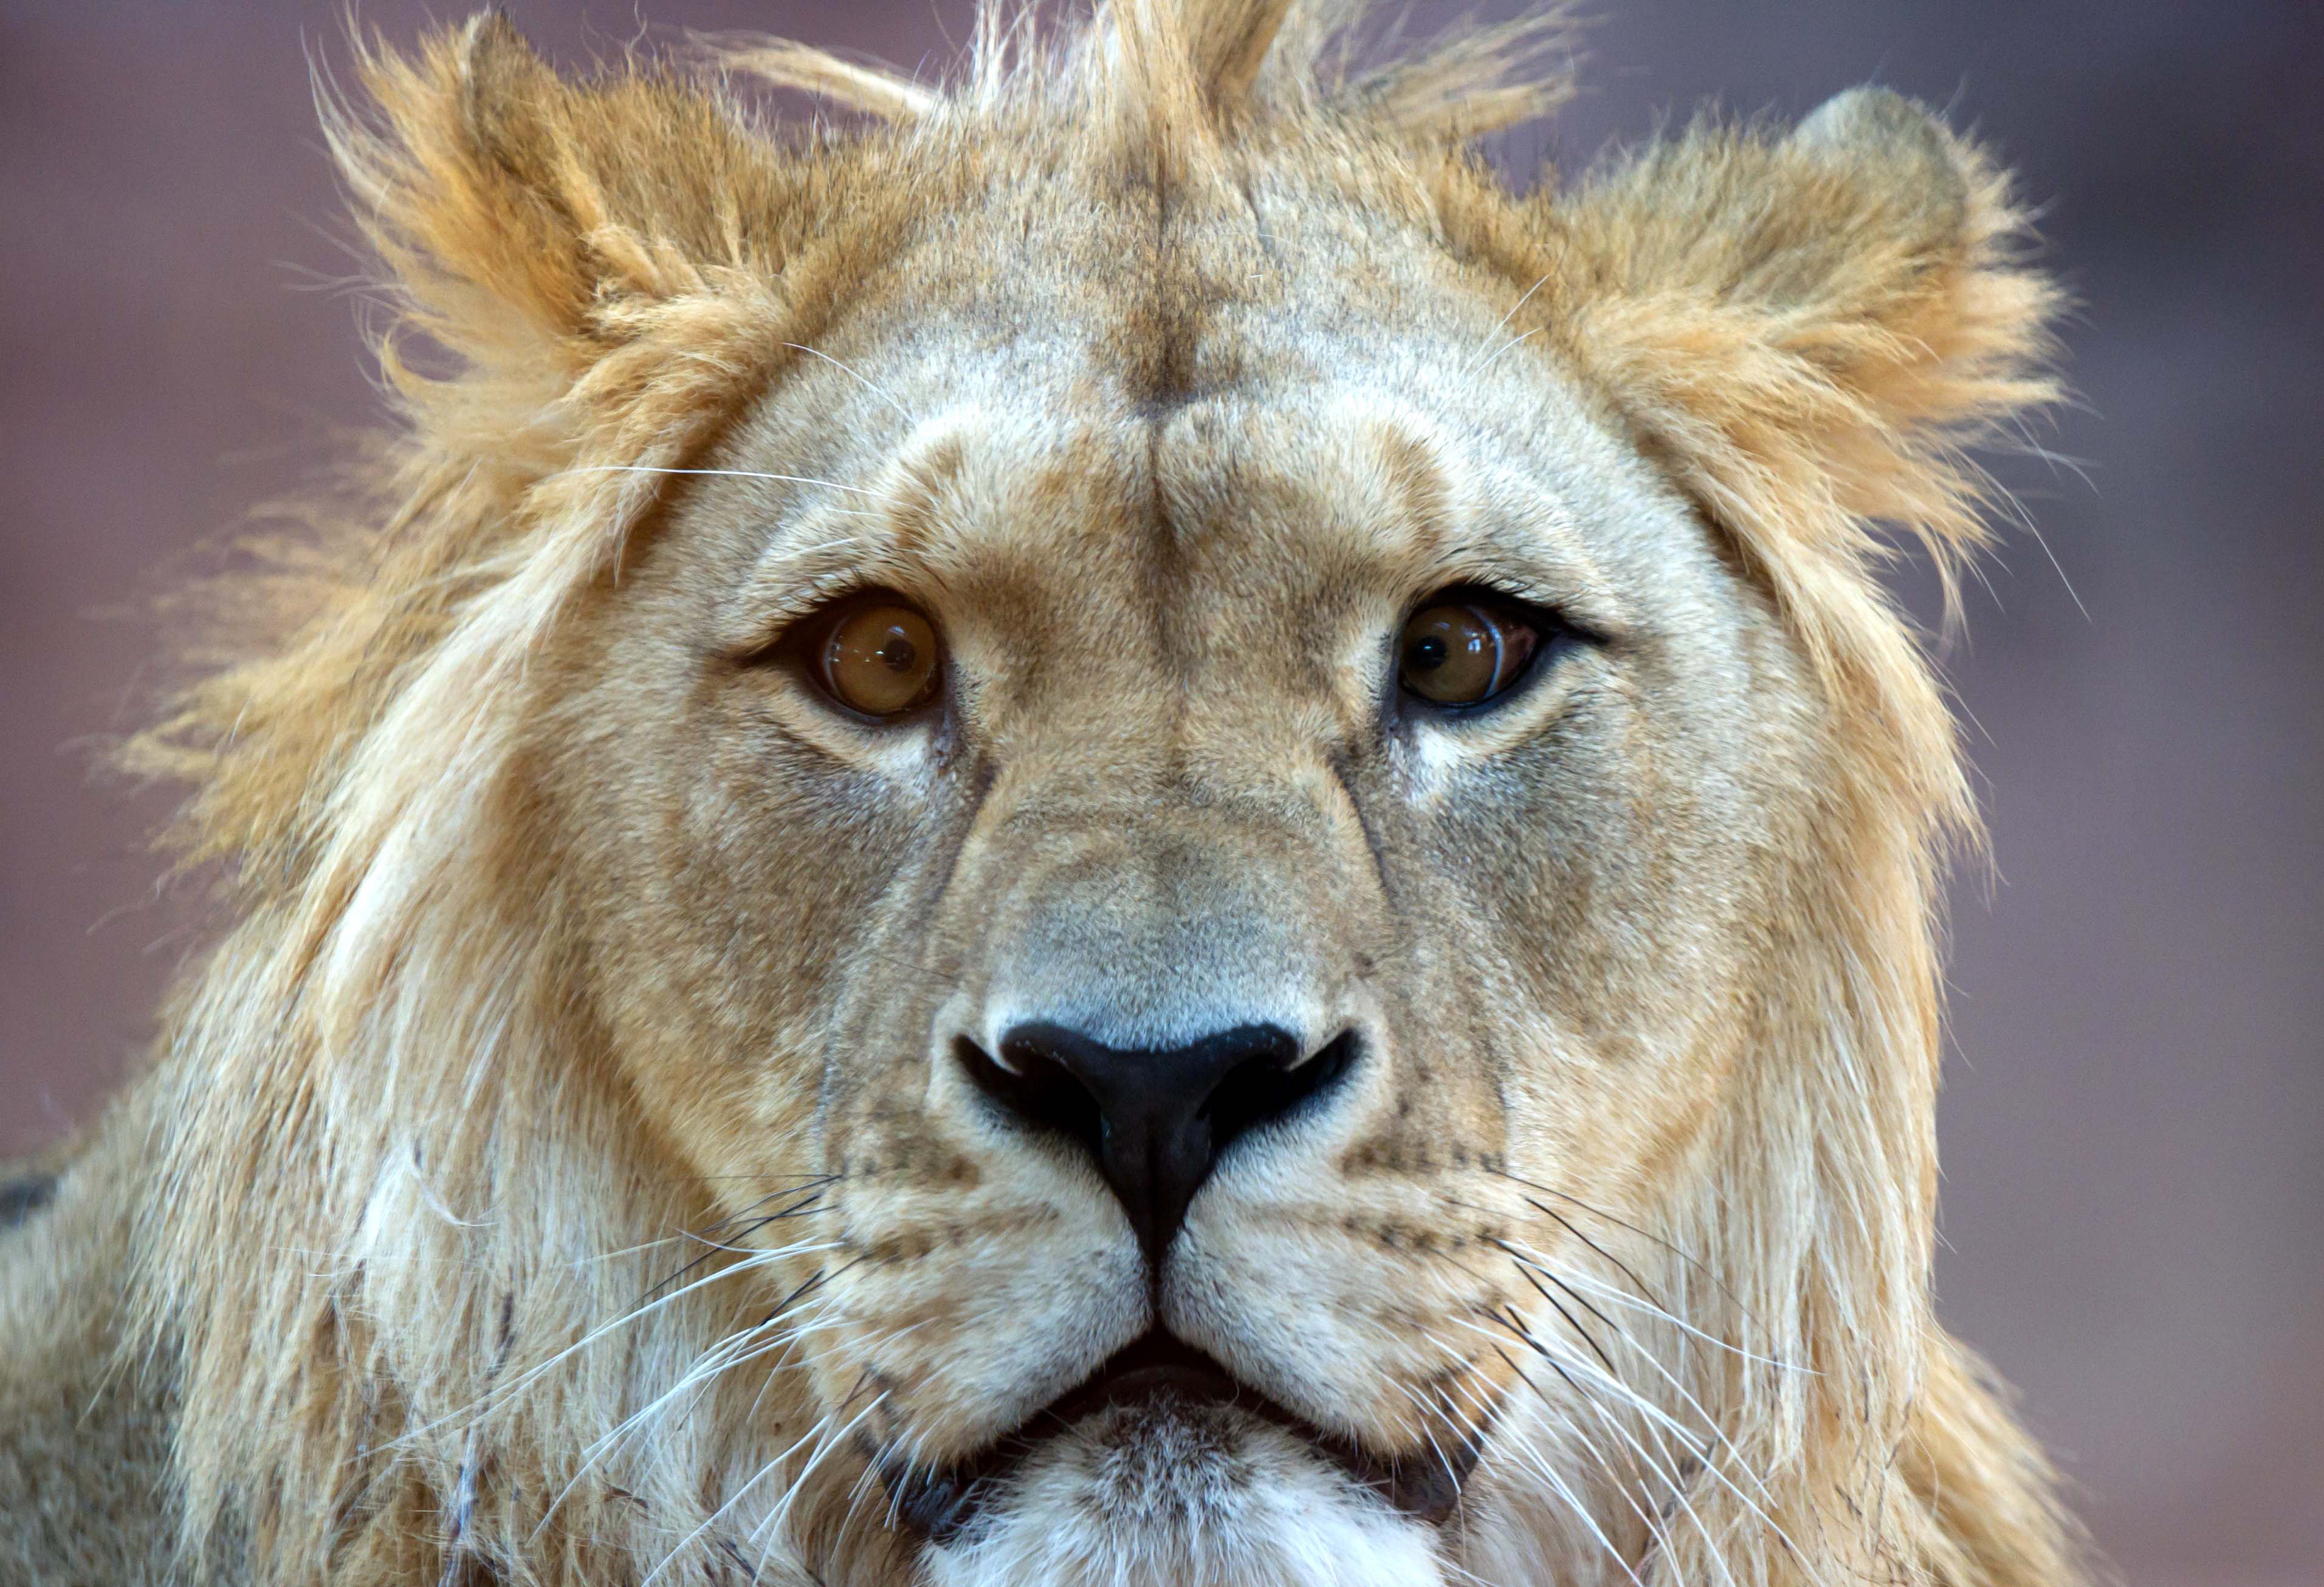 Lauren Fagen hade blivit varnad för att de vilda djuren på cenret kan gå till attack, men valde ändå att pussa lejonet.